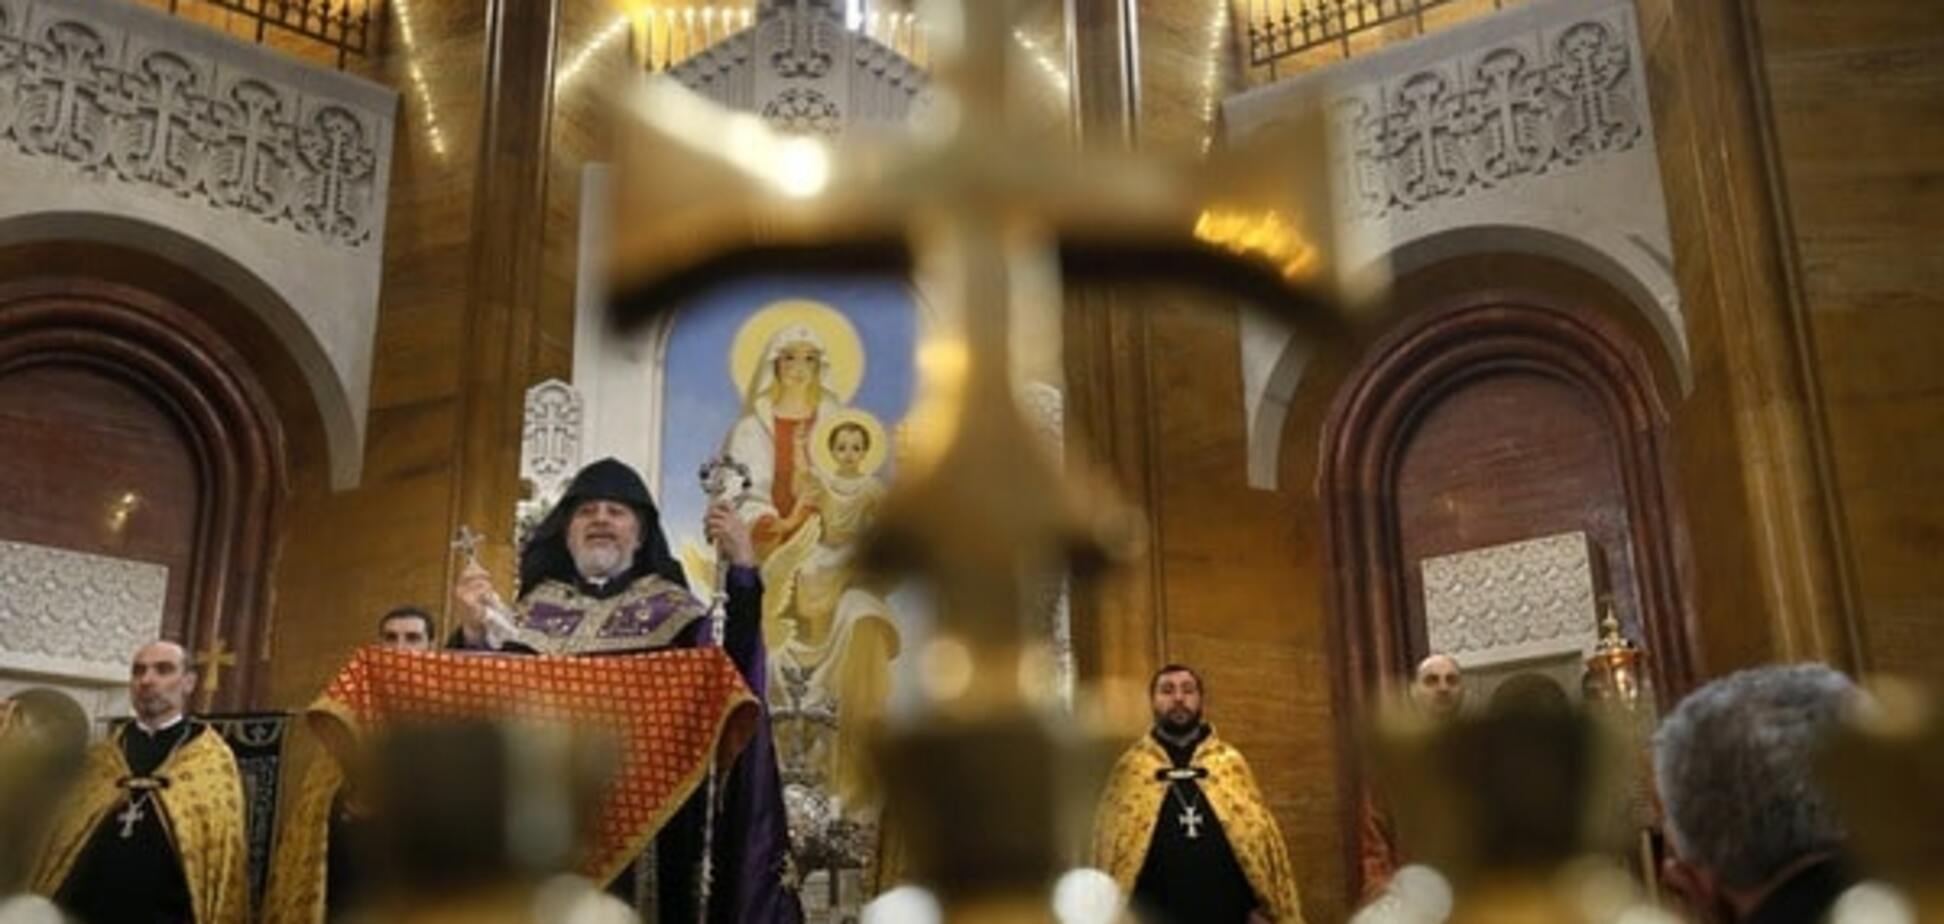 Бог помог: в России суд простил церкви огромные долги 'за молитвы'